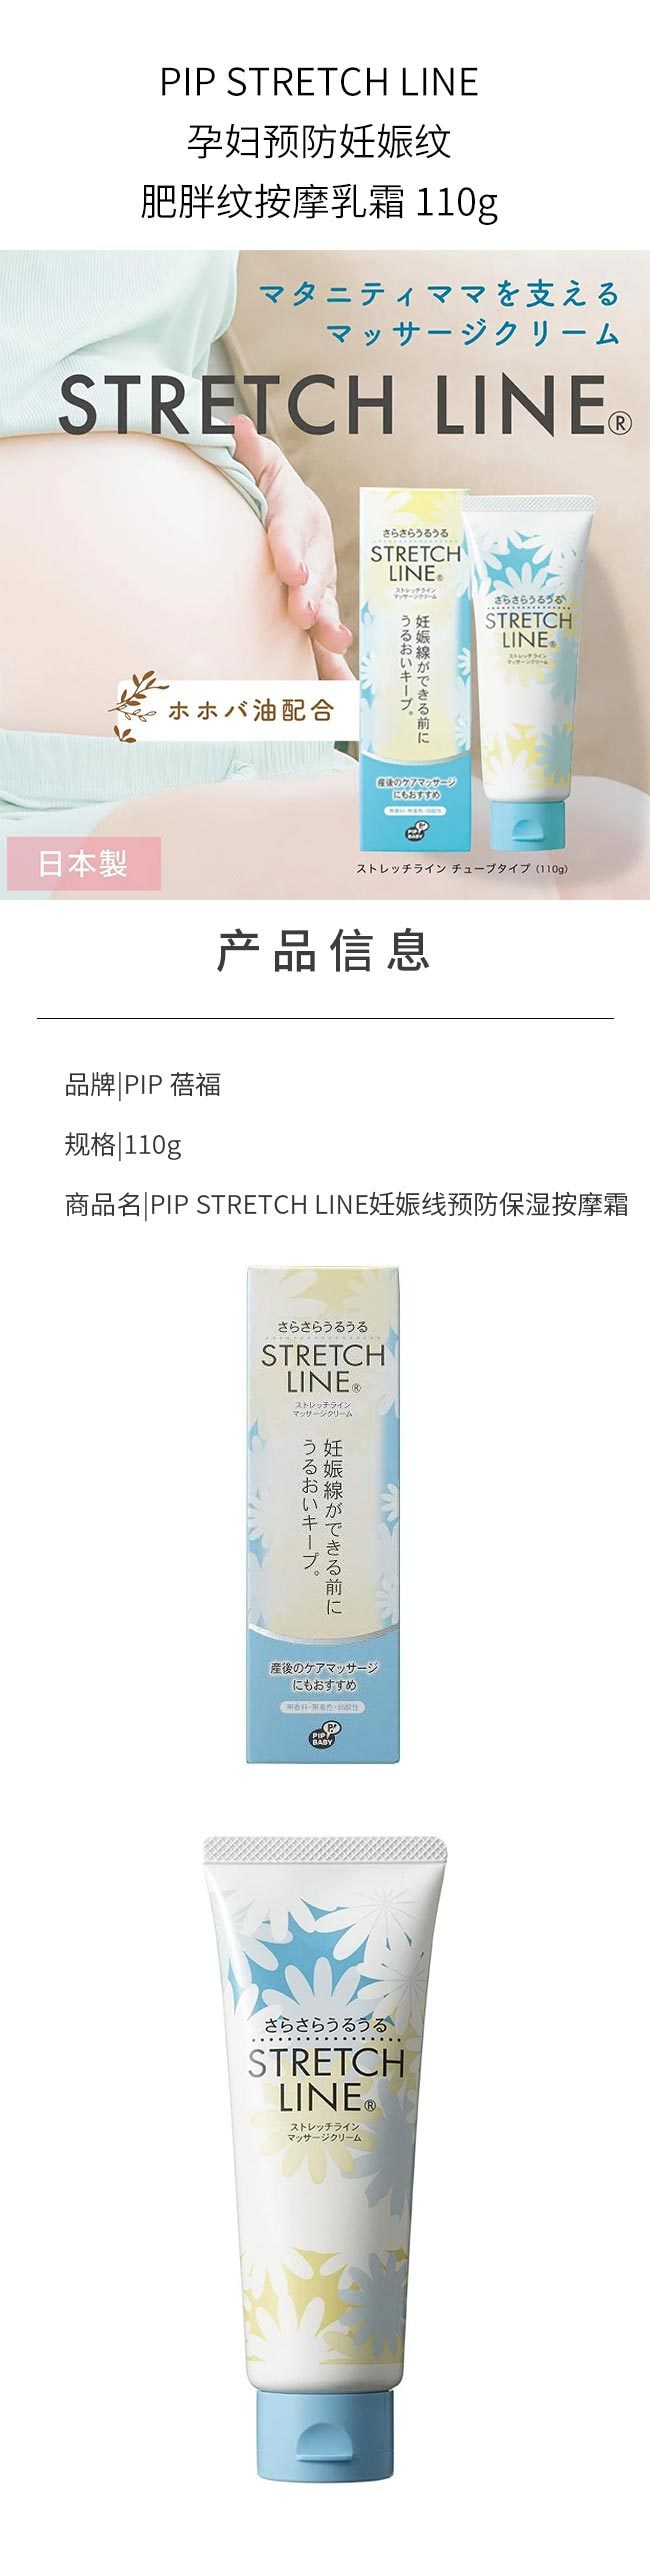 【日本直邮】PIP STRETCH LINE孕妇预防妊娠纹肥胖纹按摩乳霜 110g